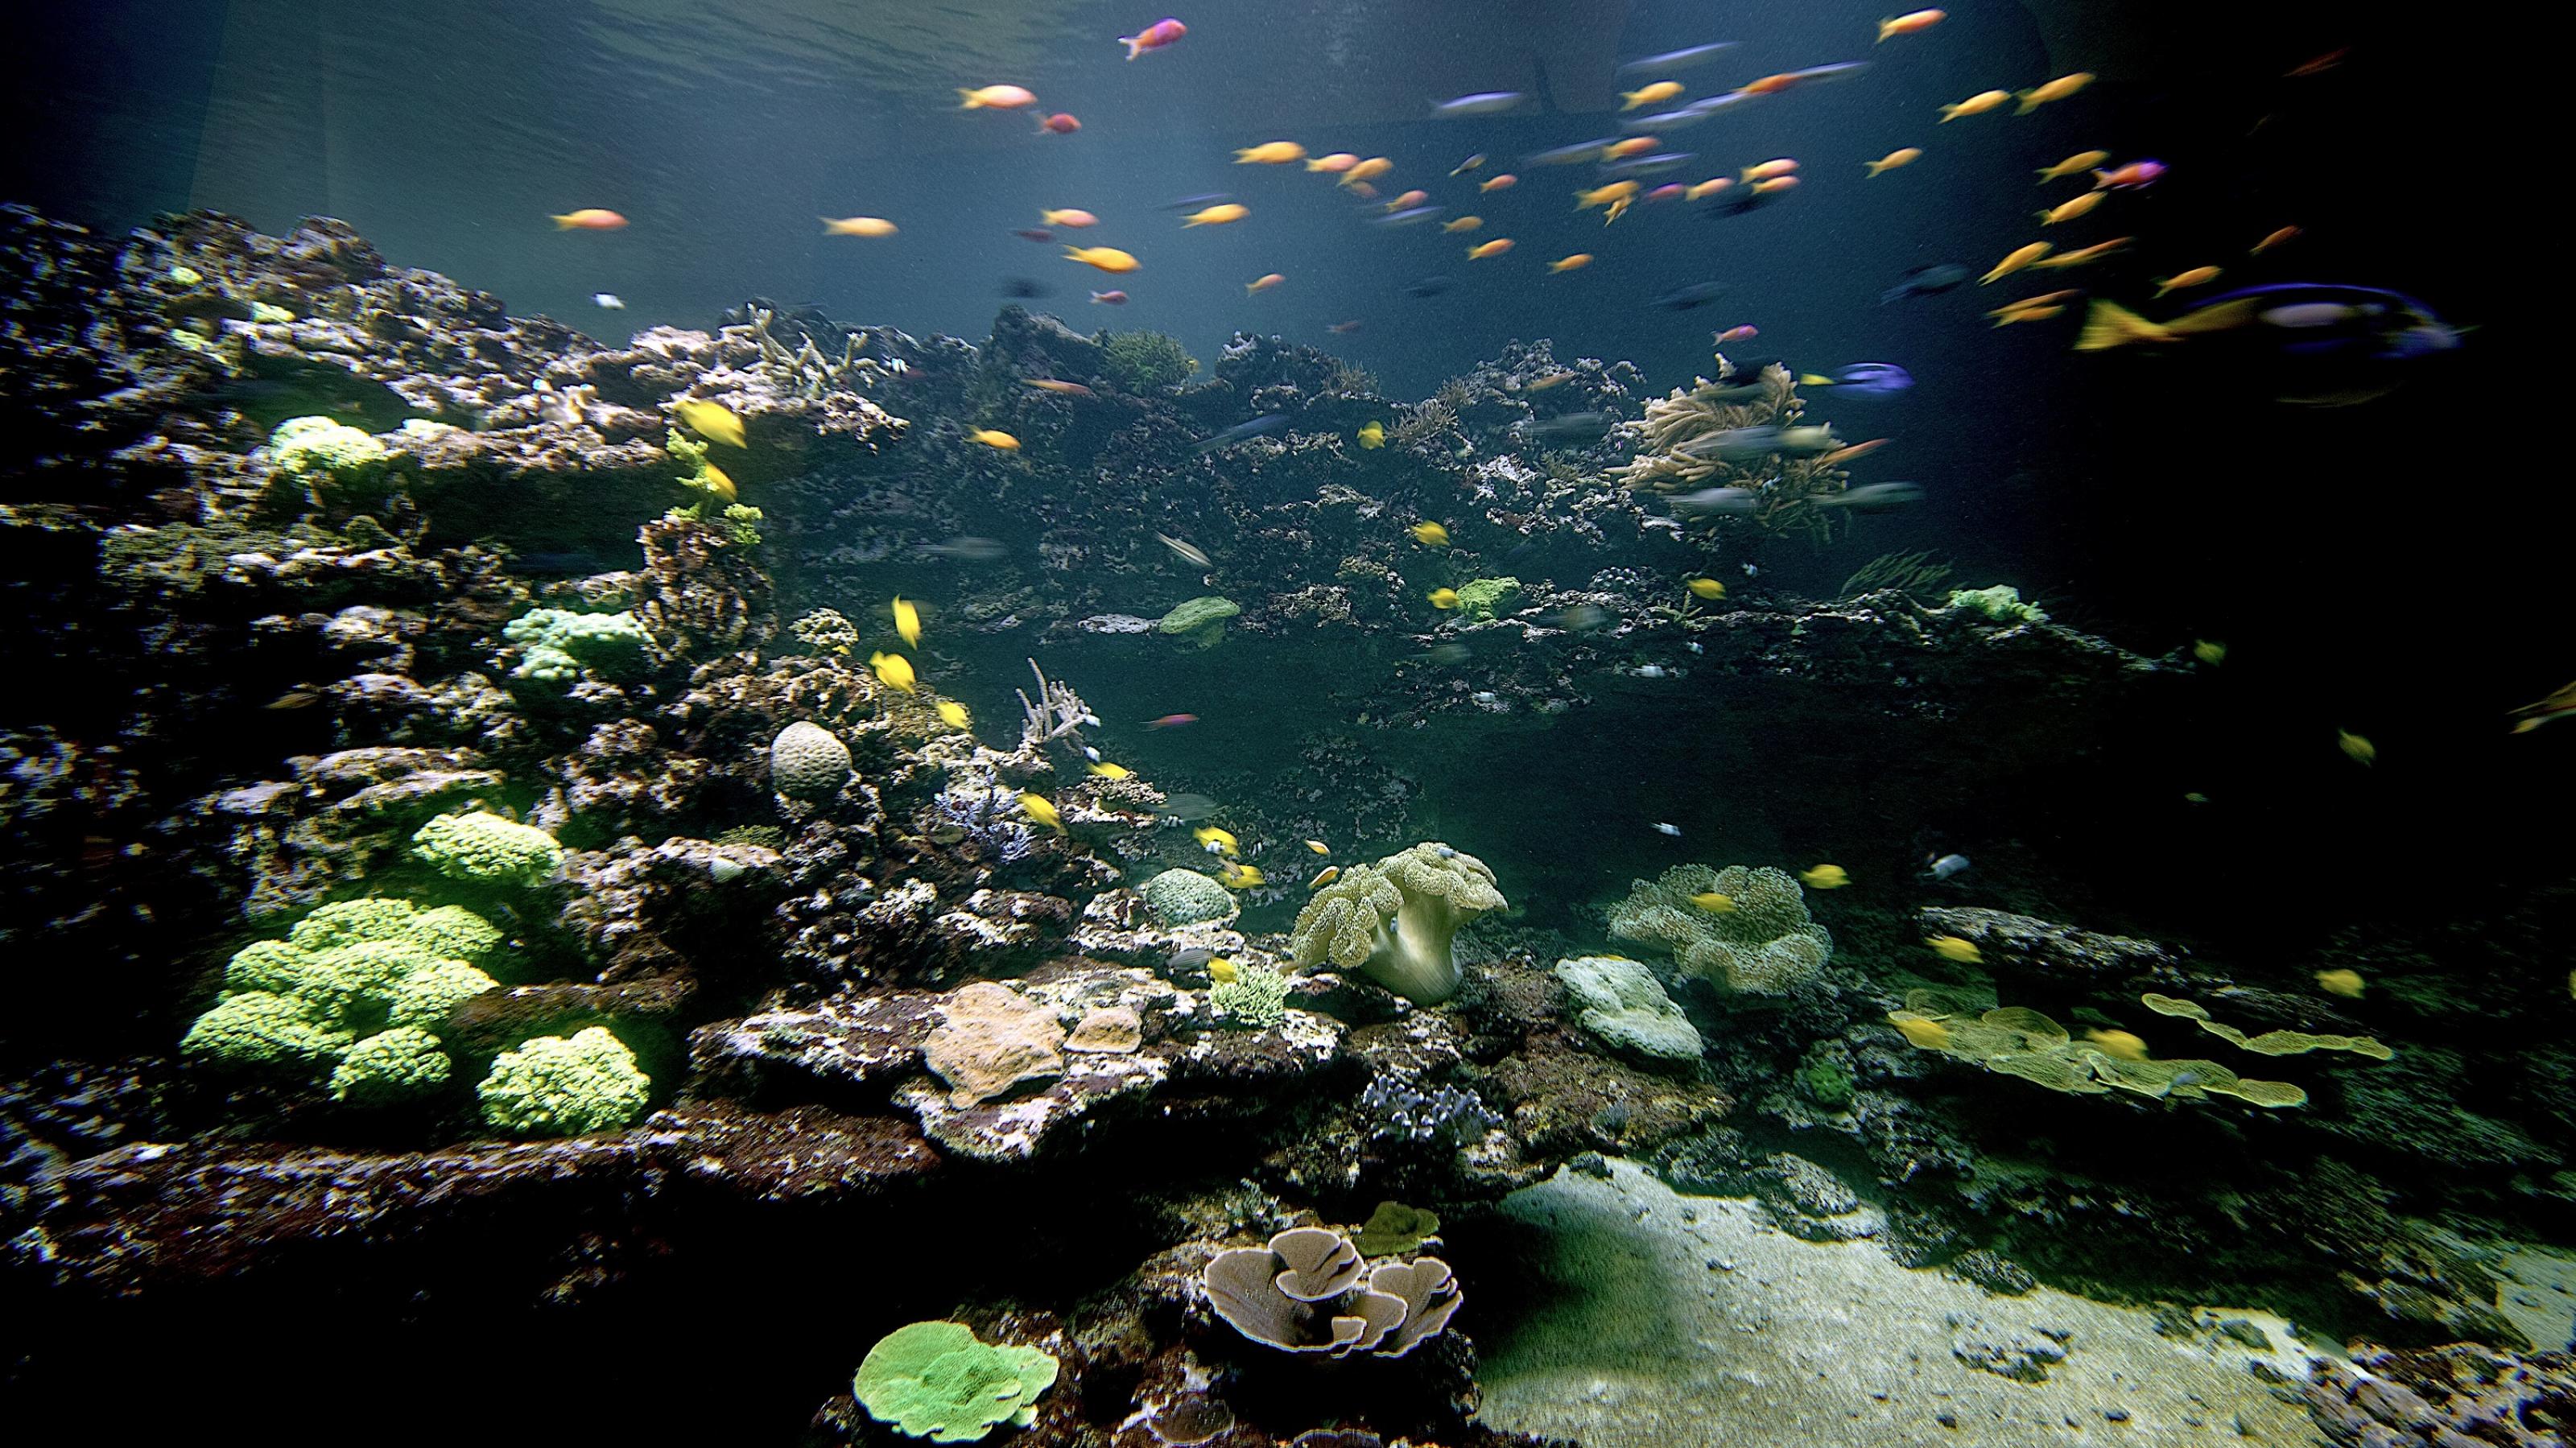 Blick in das Meerwasser-Aquarium des Naturkundemuseums Karlsruhe. Buntfarbige Korallen und tropische Fische in einer Unterwasser-Landschaft.